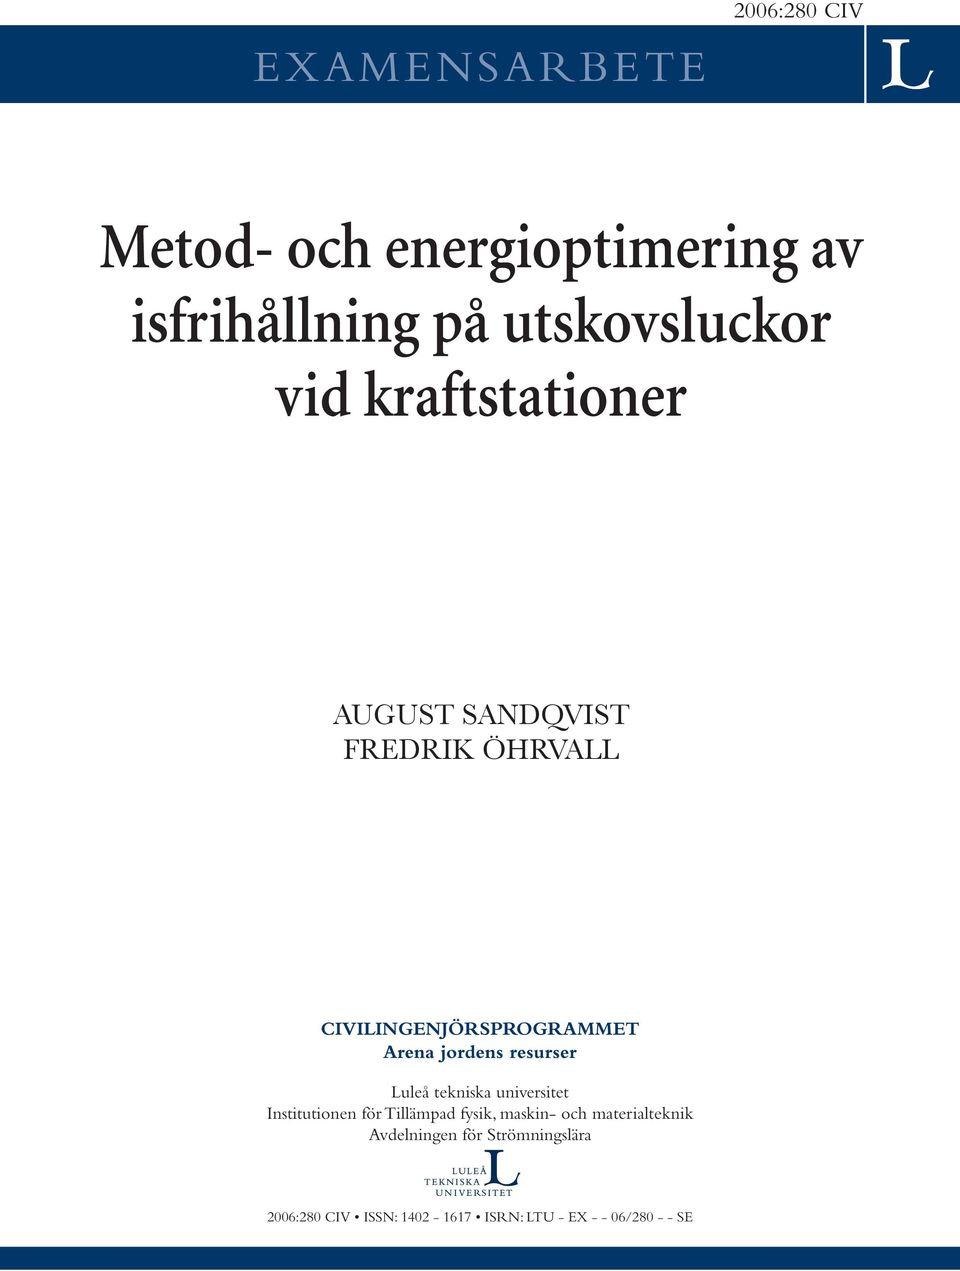 resurser Luleå tekniska universitet Institutionen för Tillämpad fysik, maskin- och